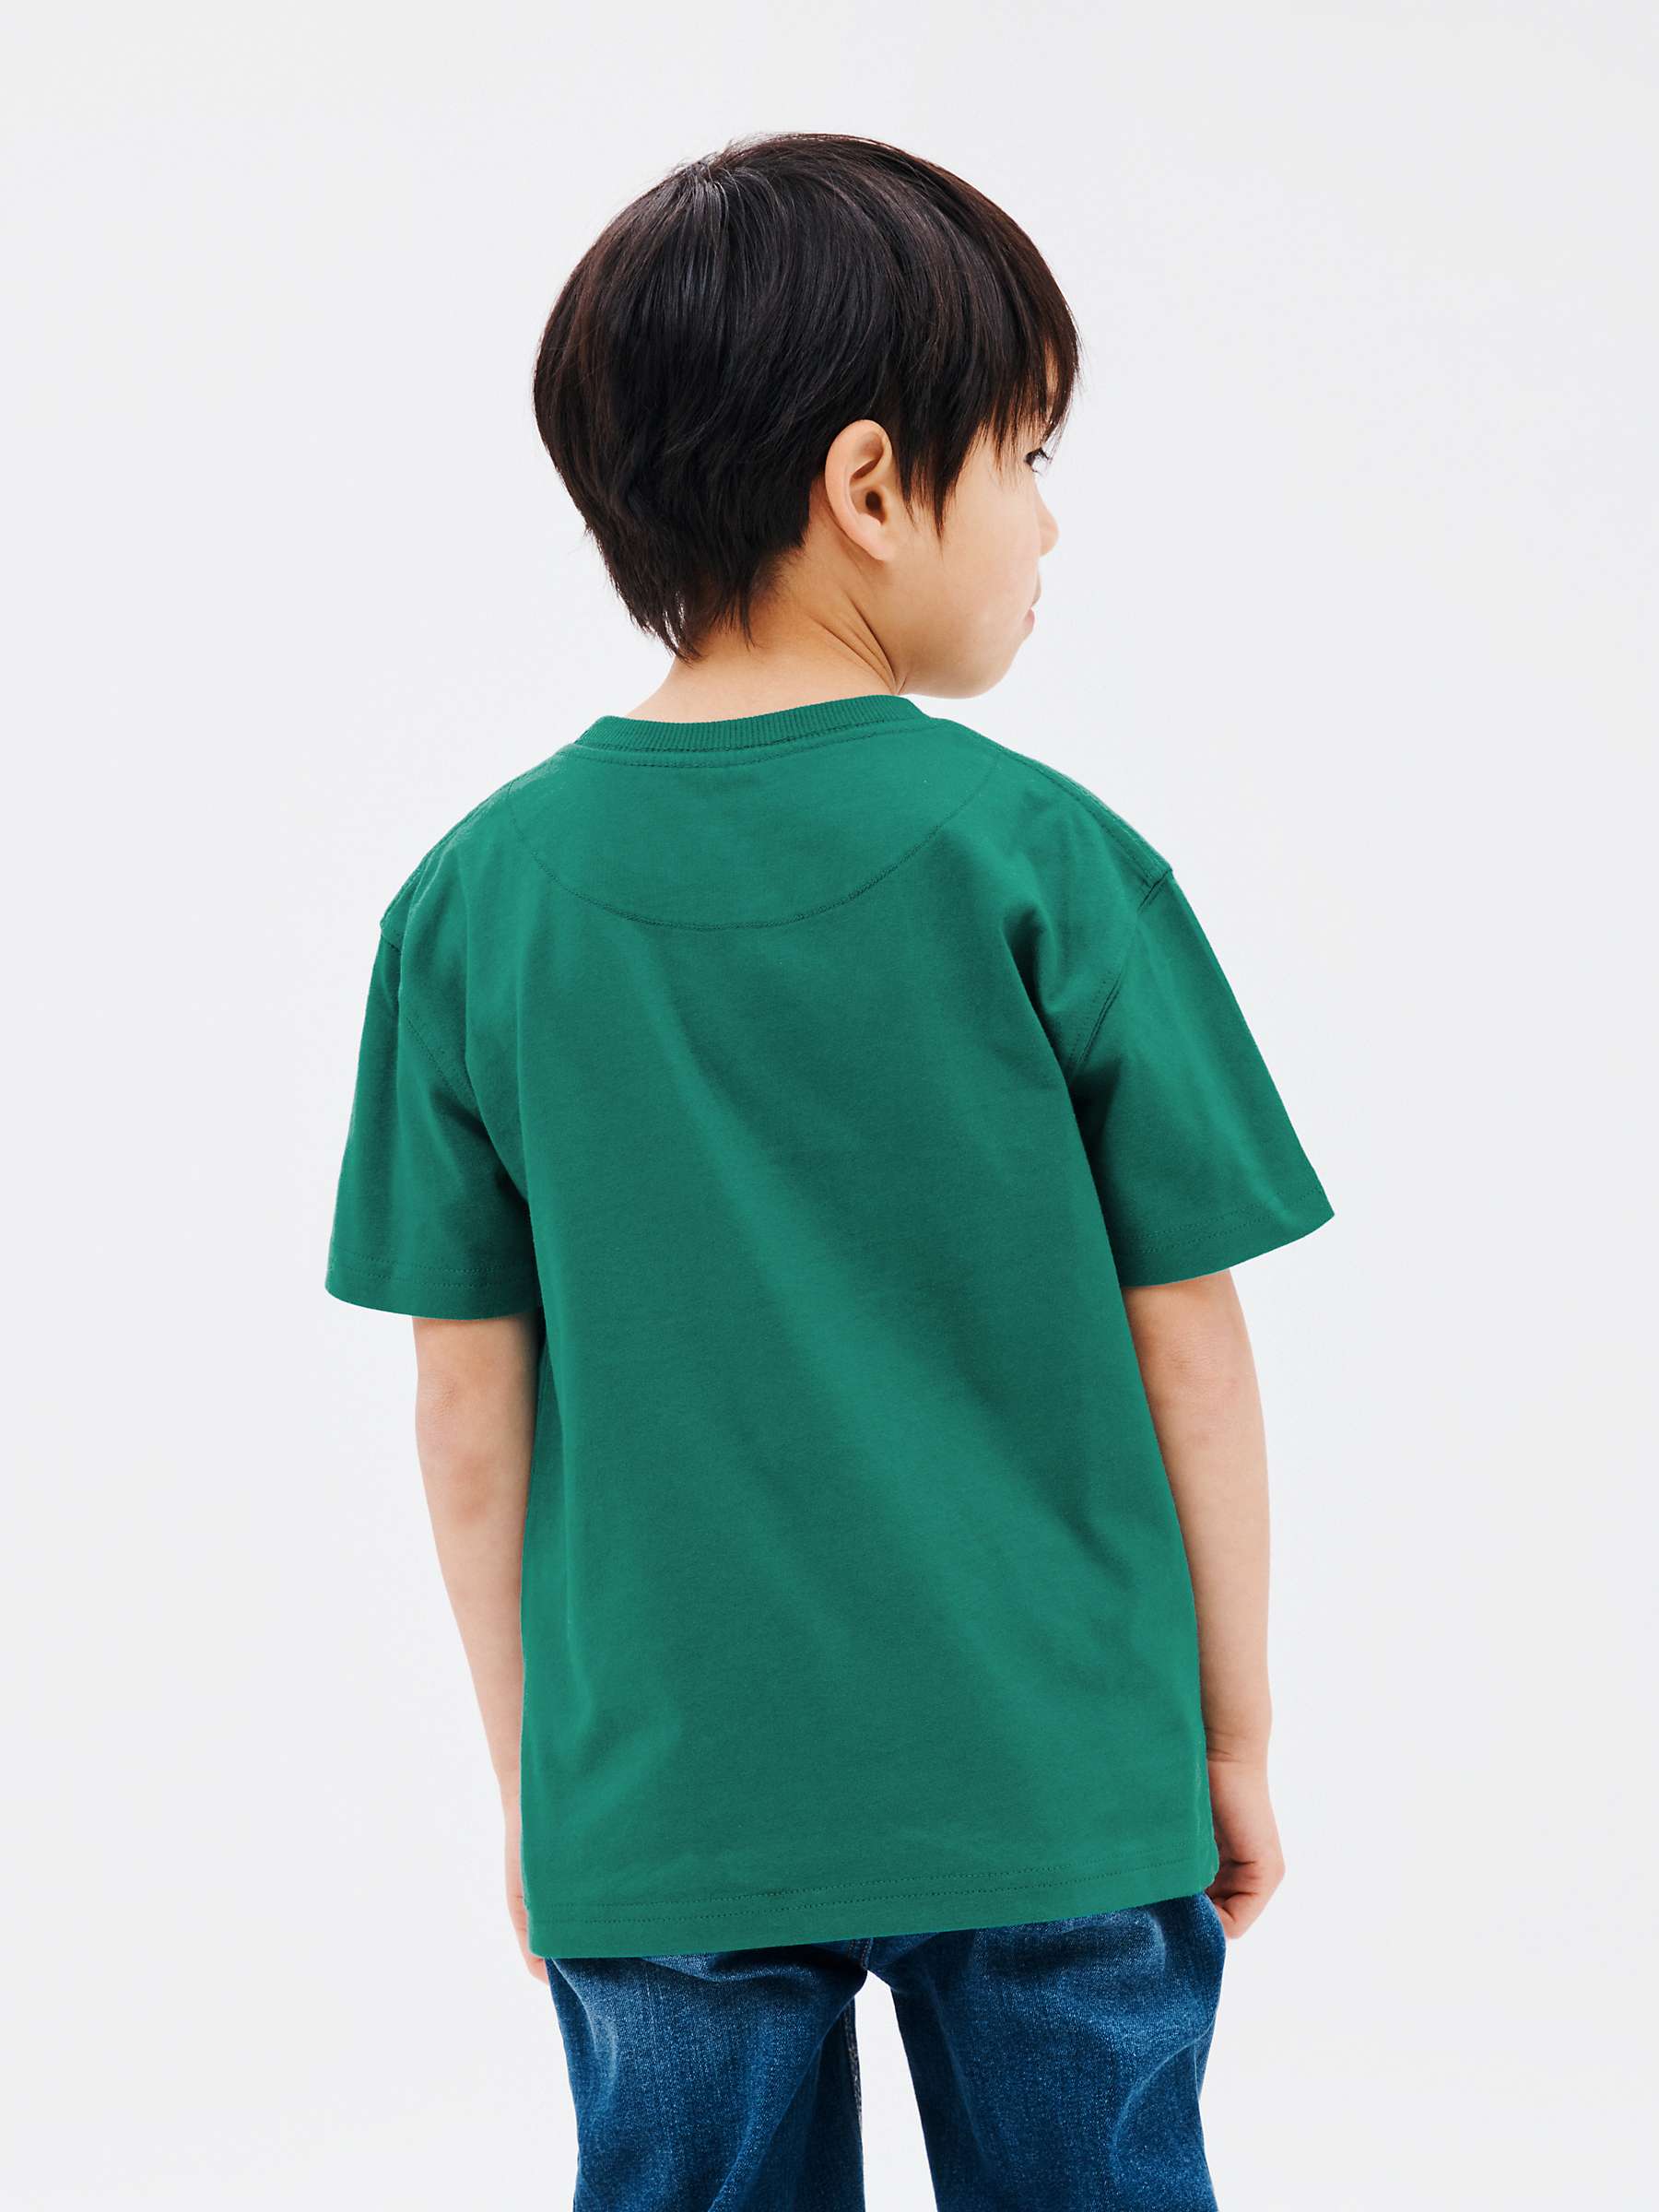 Buy John Lewis Kids' T-Rex T-Shirt, Green Online at johnlewis.com